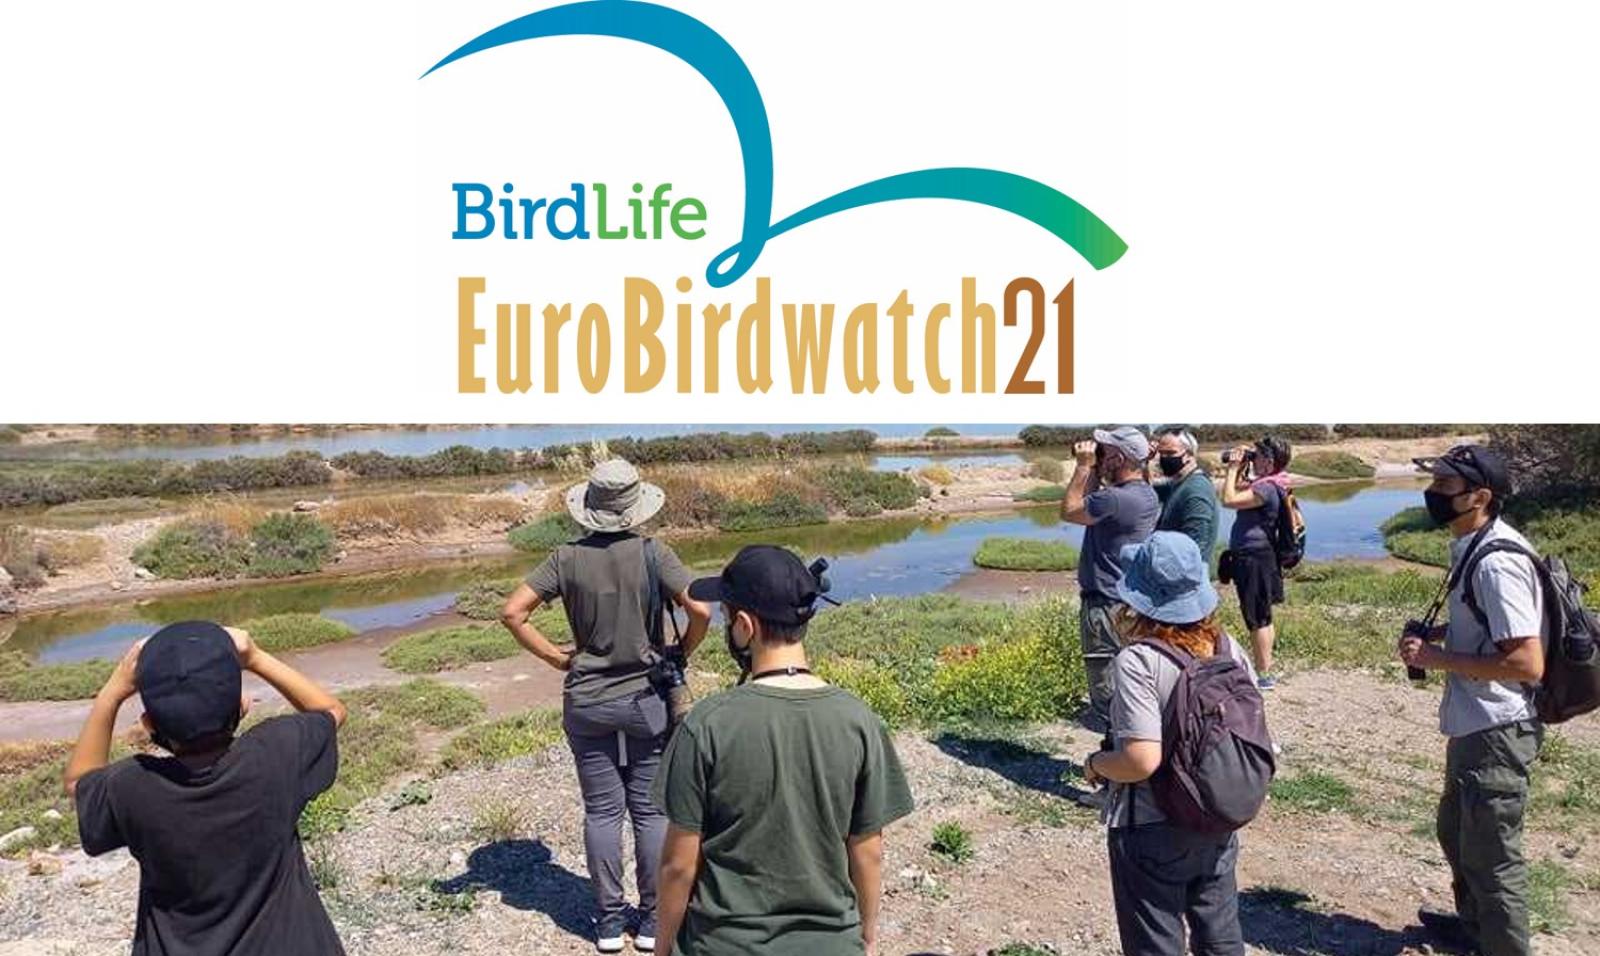 Eurobirdwatch 2021